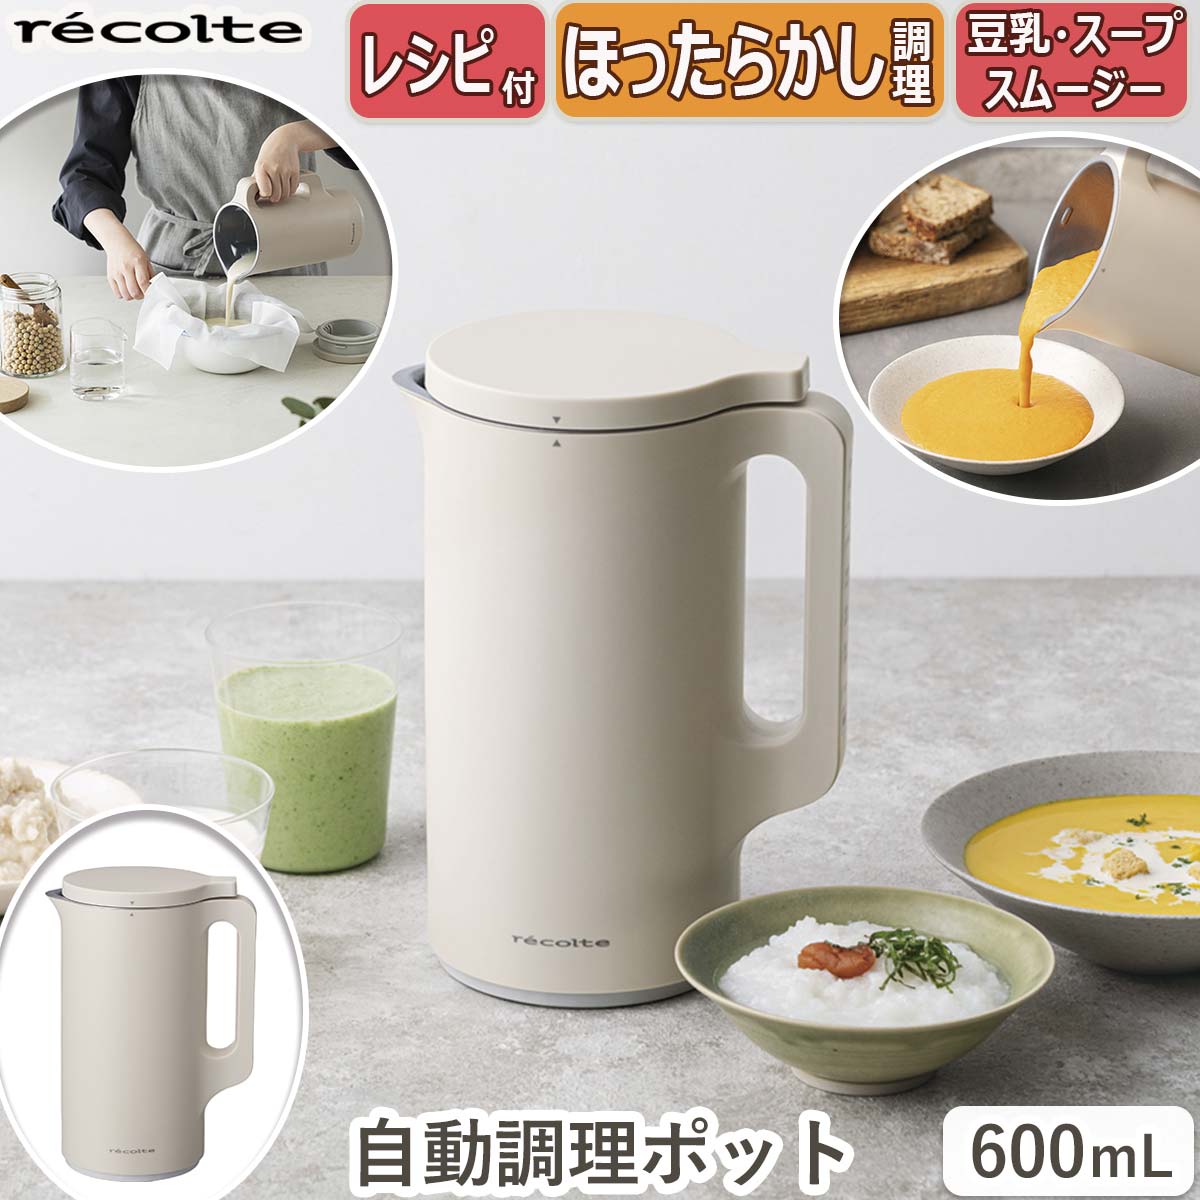 recolte レコルト 自動調理ポット 豆乳メーカー スープメーカー ブレンダー ミキサー スープジャー ジューサー RSY-2-W